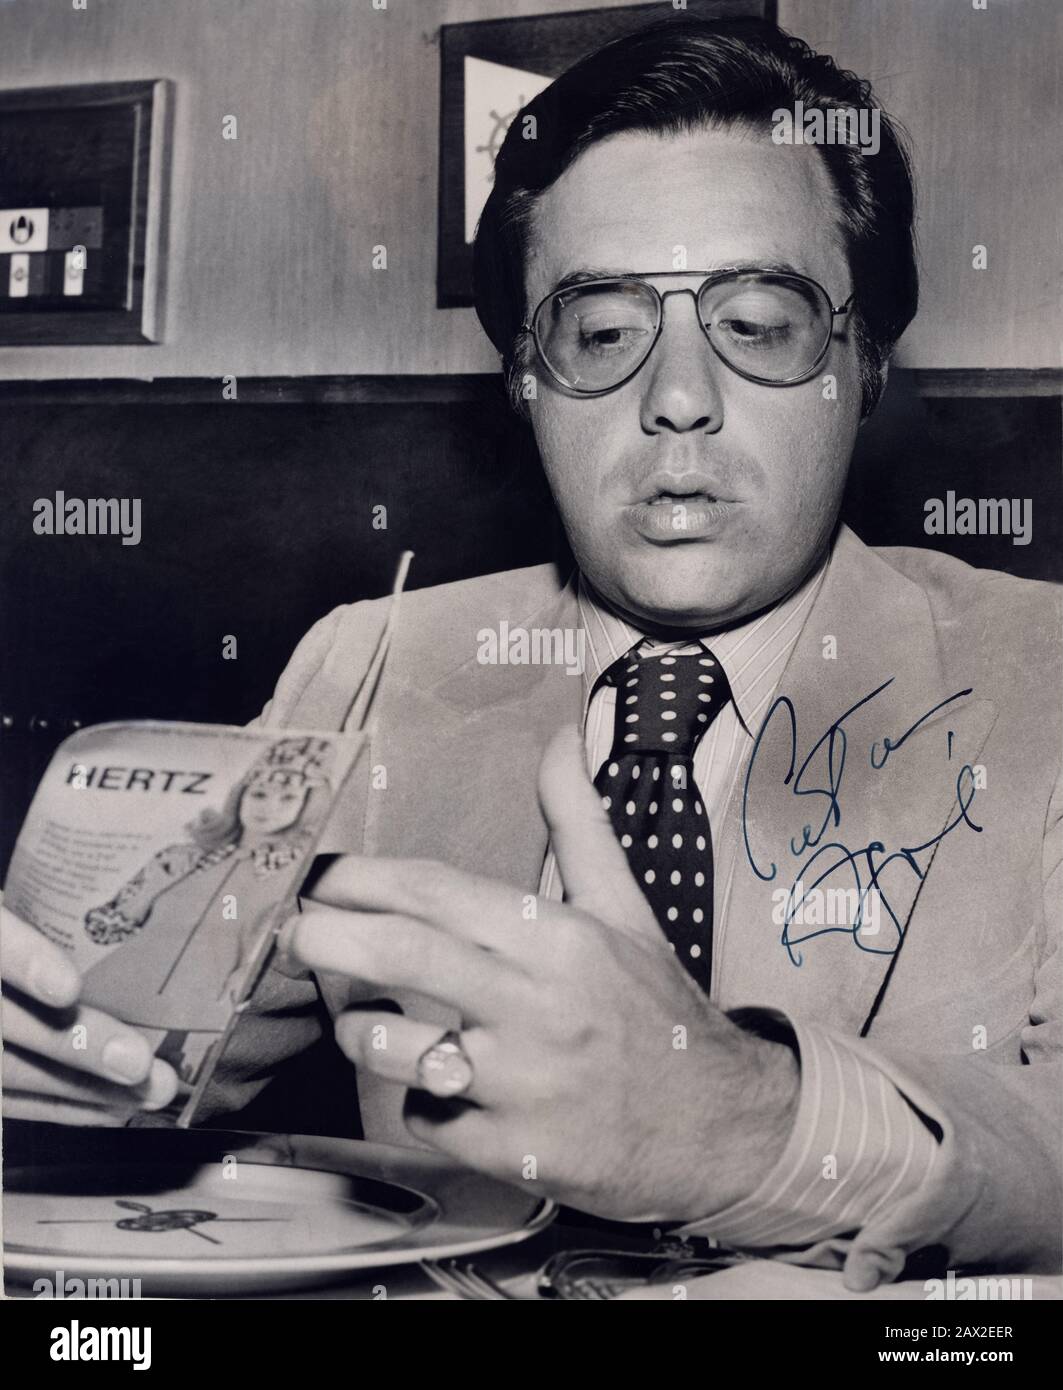 1971 , november , USA : The celebrated movie director PETER BODGANOVICH ( born July 30, 1939 in Kingston, New York ) at time of his movie The Last Picture Show ( L'ultimo spettacolo ) - CINEMA - FILM - REGISTA CINEMATOGRAFICO - tie - cravatta - pois - polka dots - lens - occhiali da vista - ray-bann - ray bann - AUTOGRAFO - AUTOGRAPH - signature - firma  -  --- Archivio GBB Stock Photo